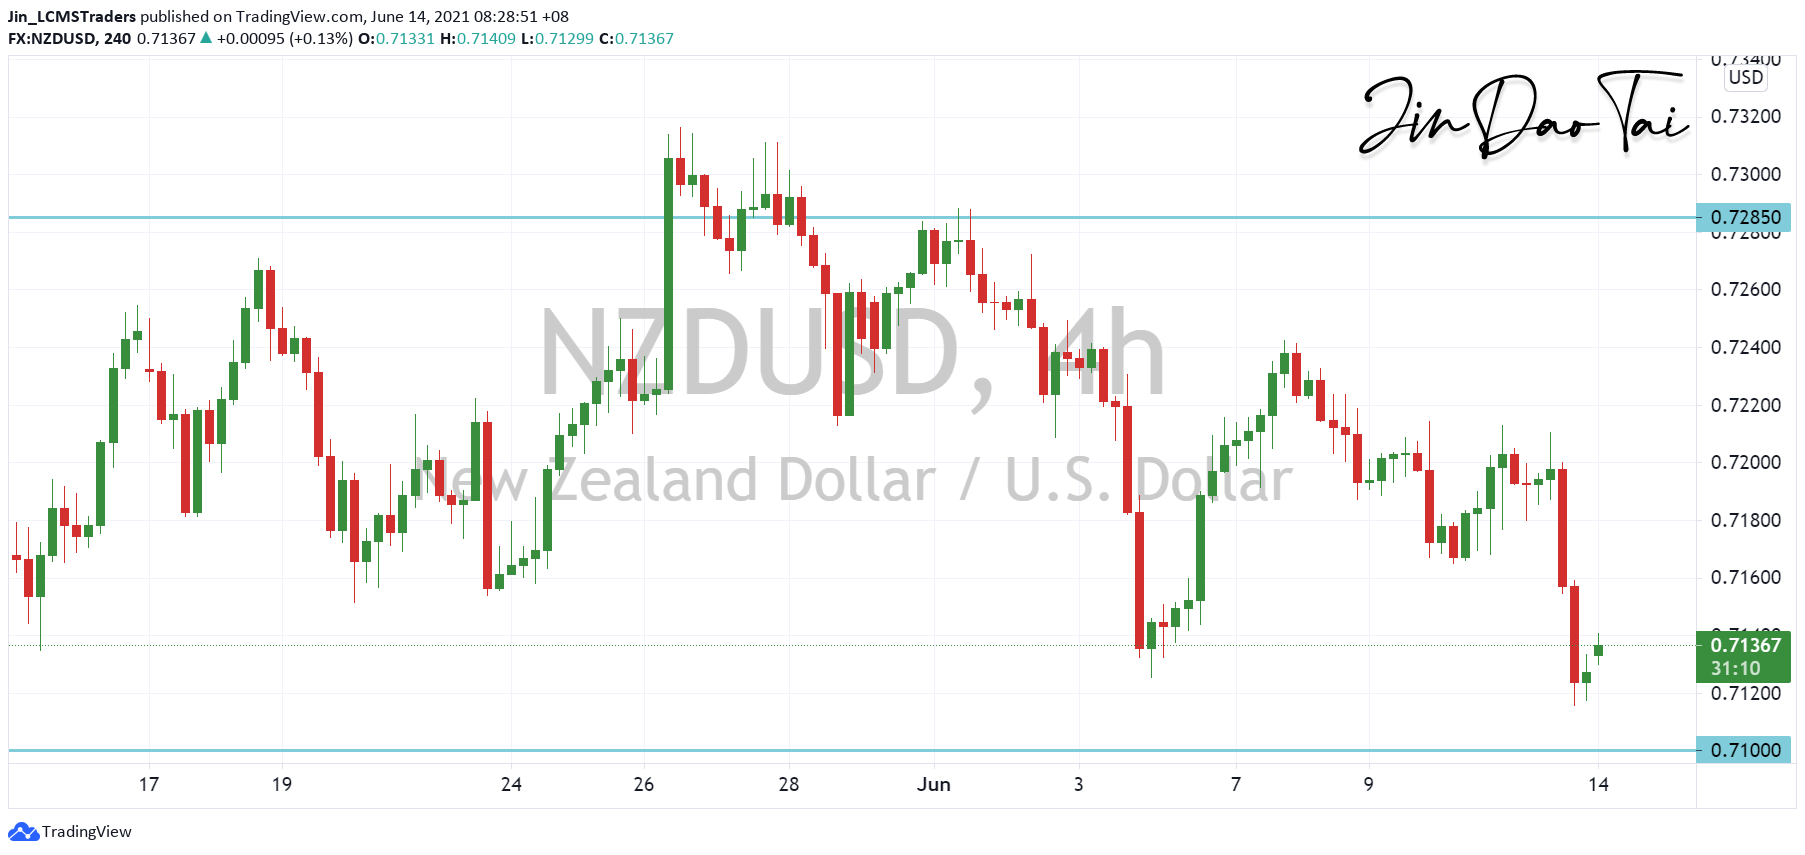 NZD/USD Outlook (14 June 2021)